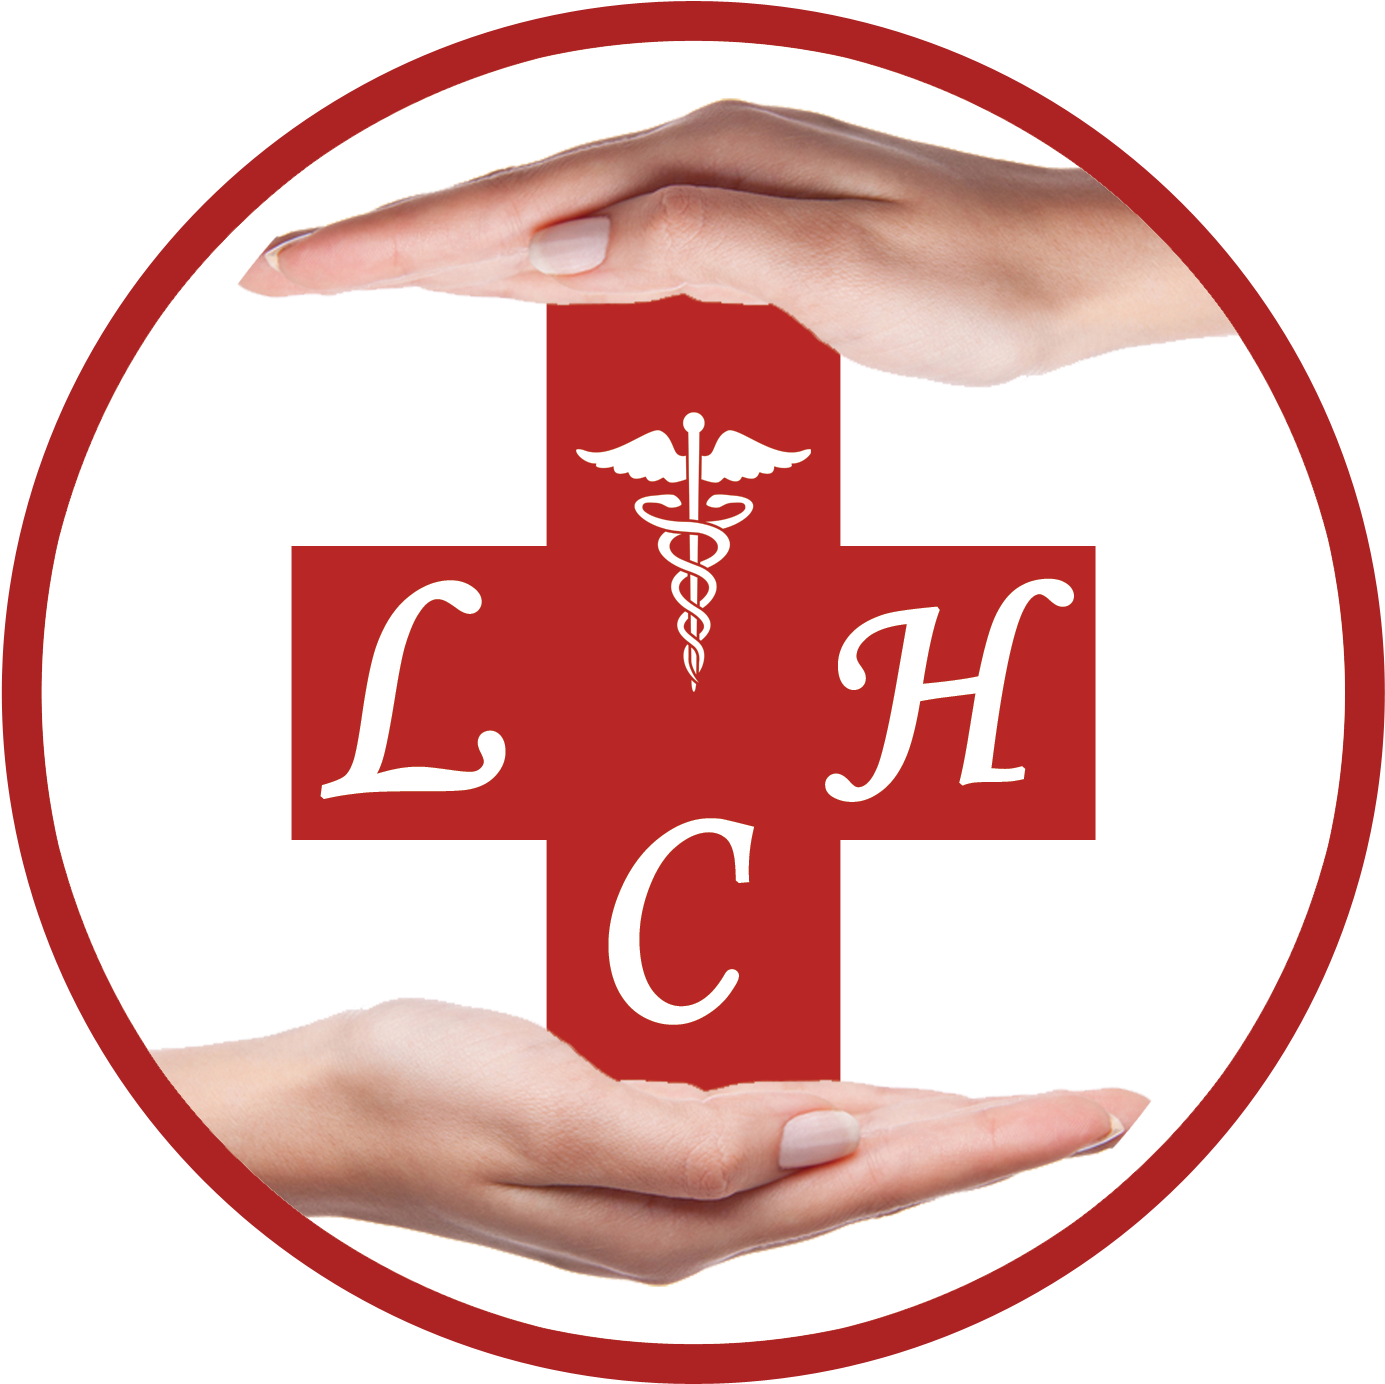 Life Care - Life Care Hospital Logo (2000x1500)